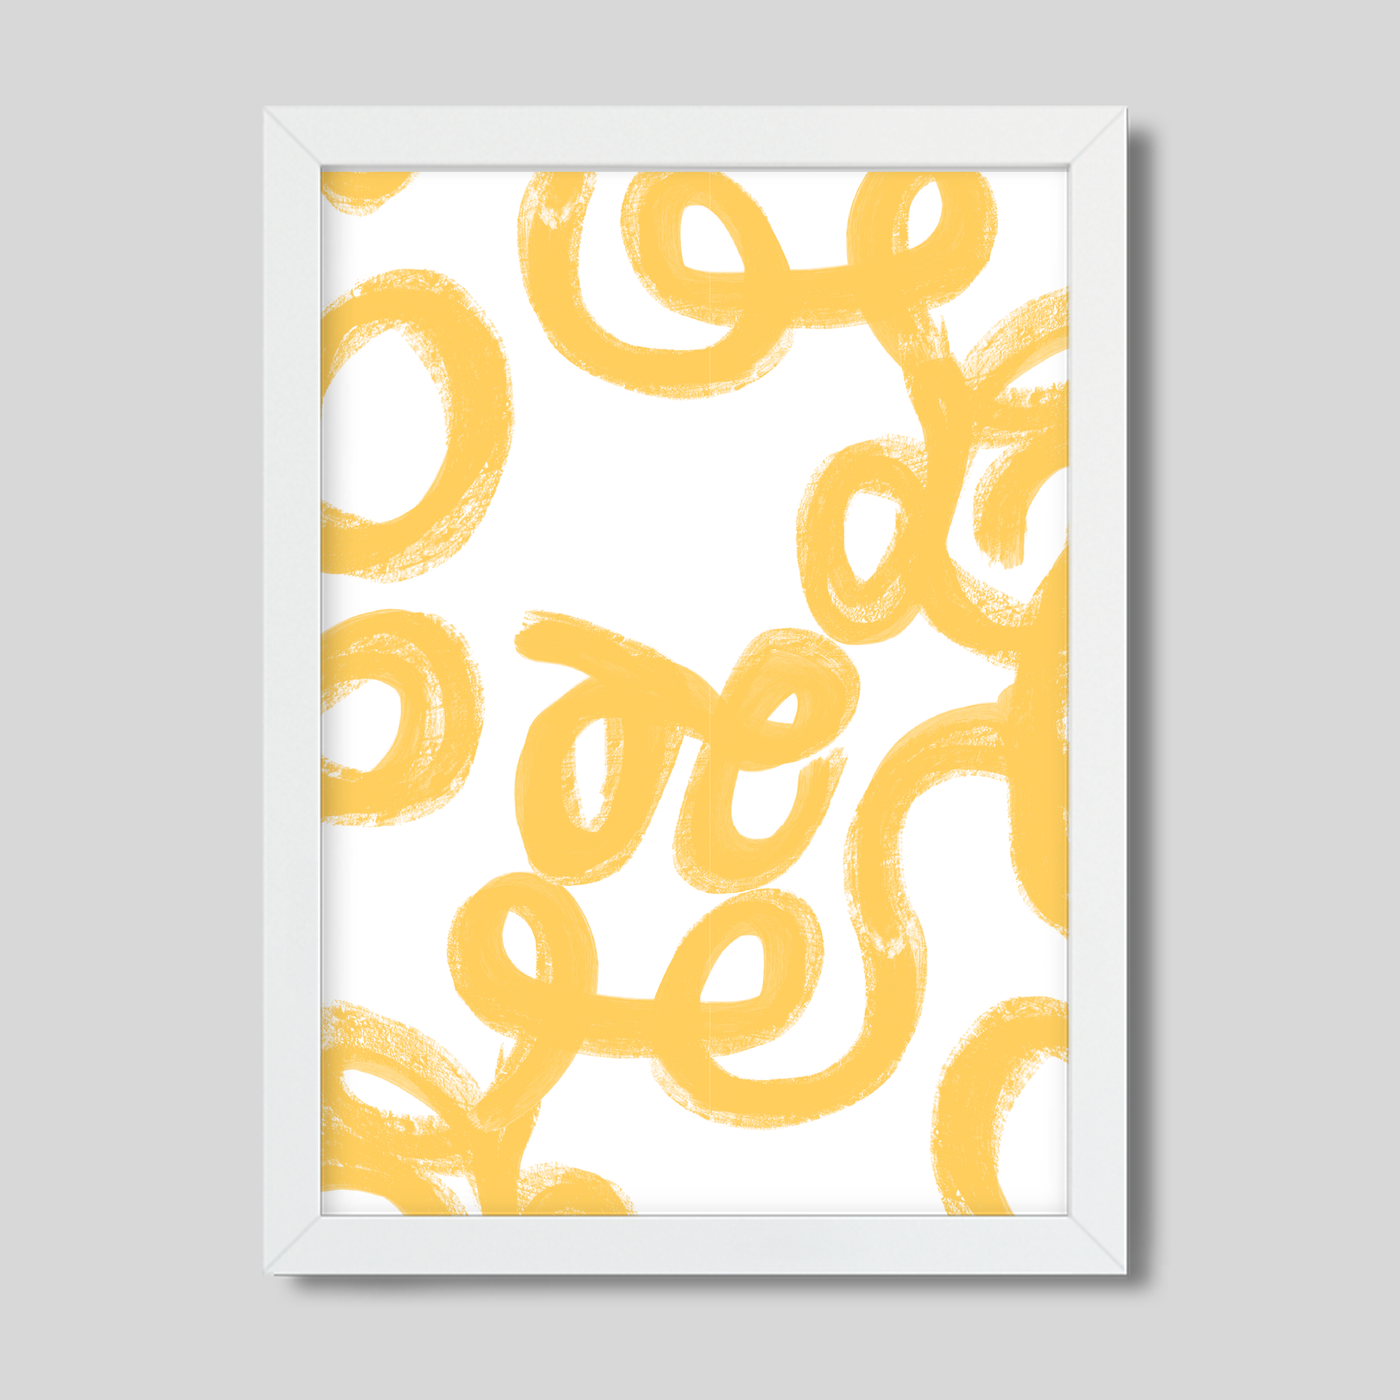 Gallery Prints Yellow / 8x10 / White Frame Penelope Art Print Katie Kime